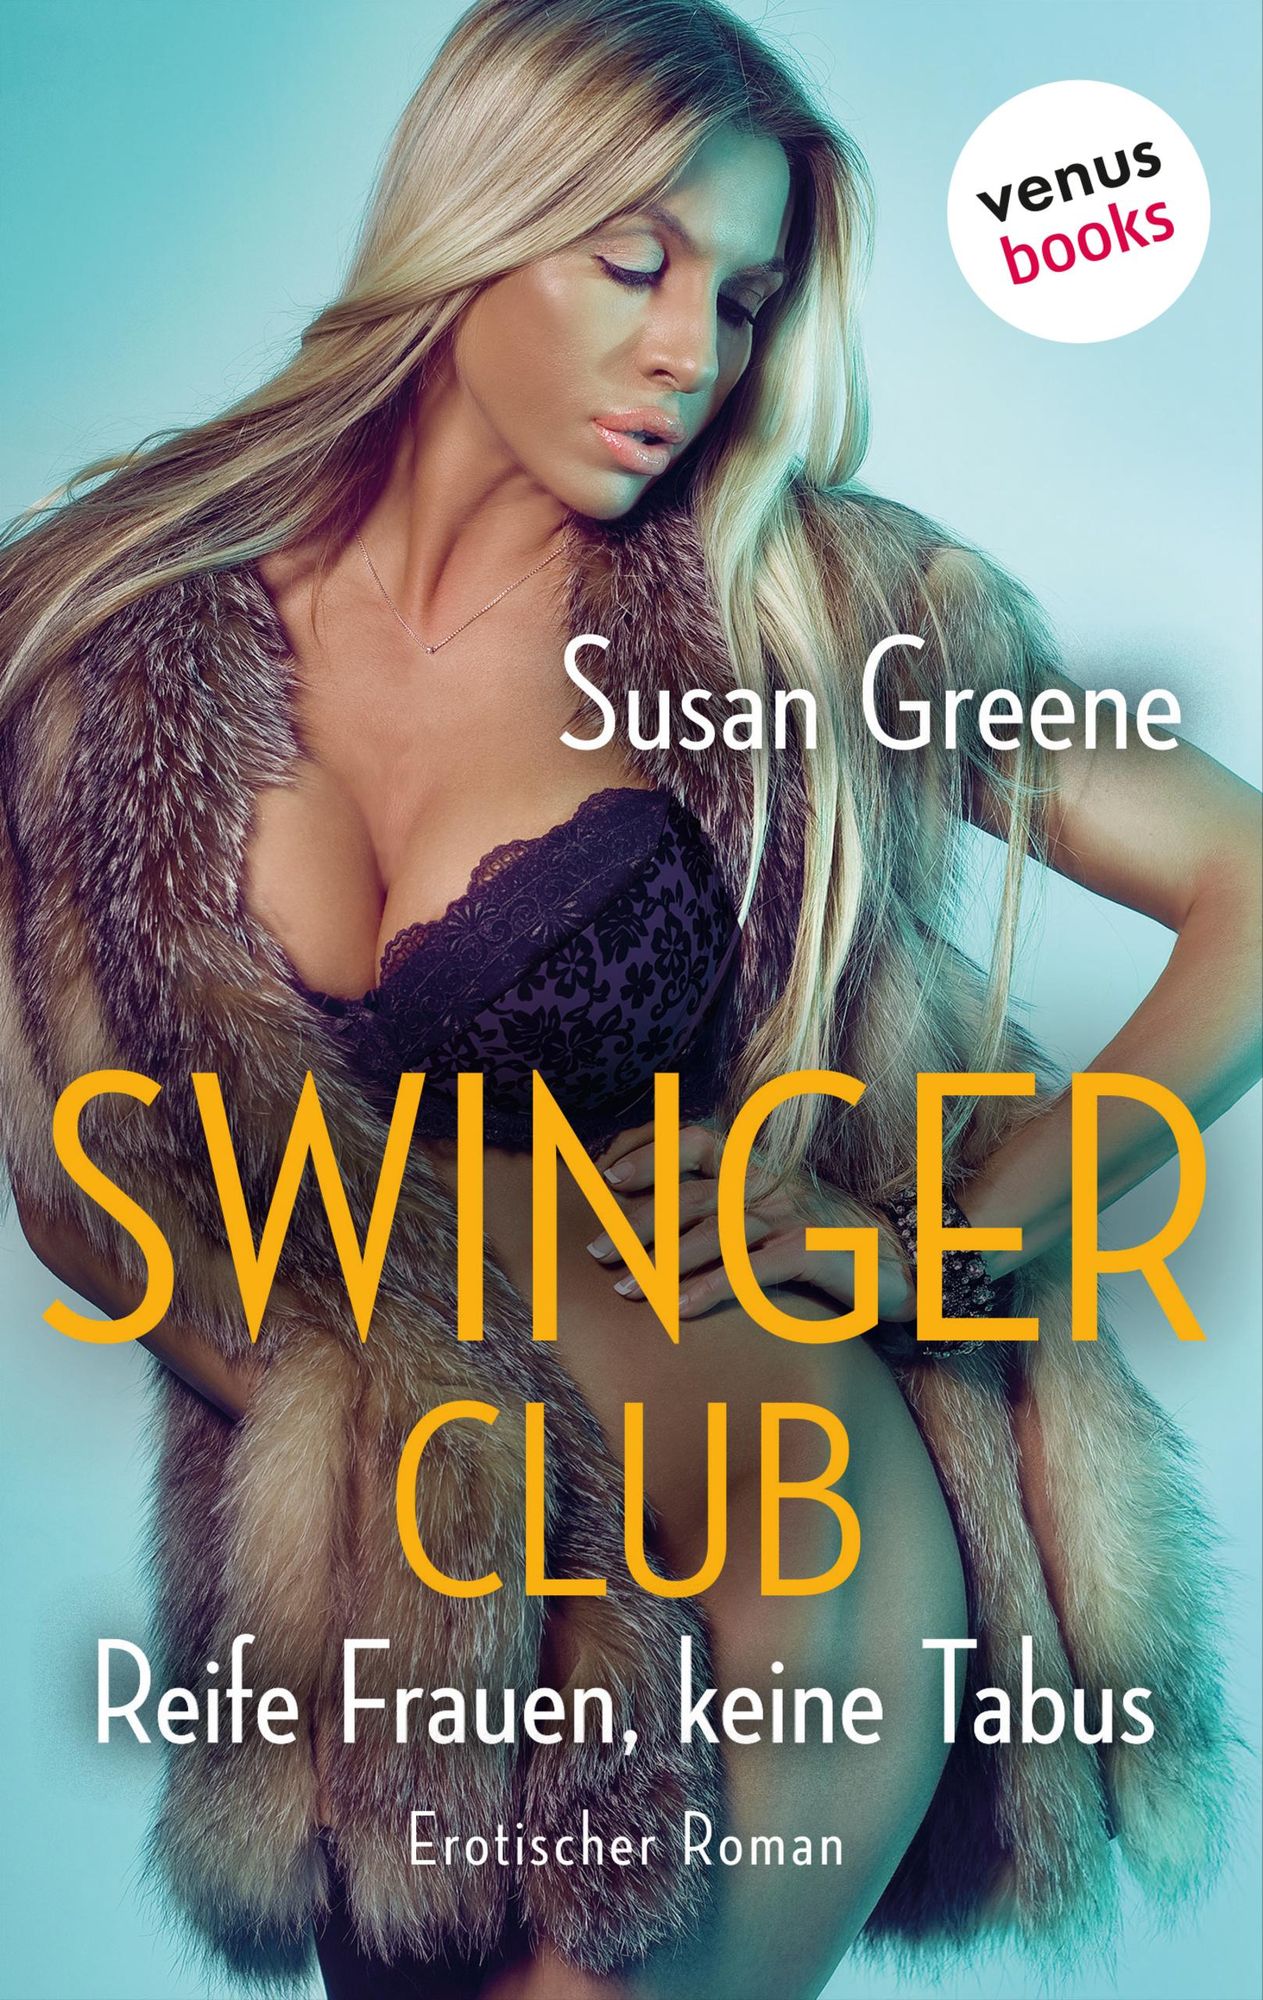 Swingerclub - Reife Frauen, keine Tabus von Susan Greene